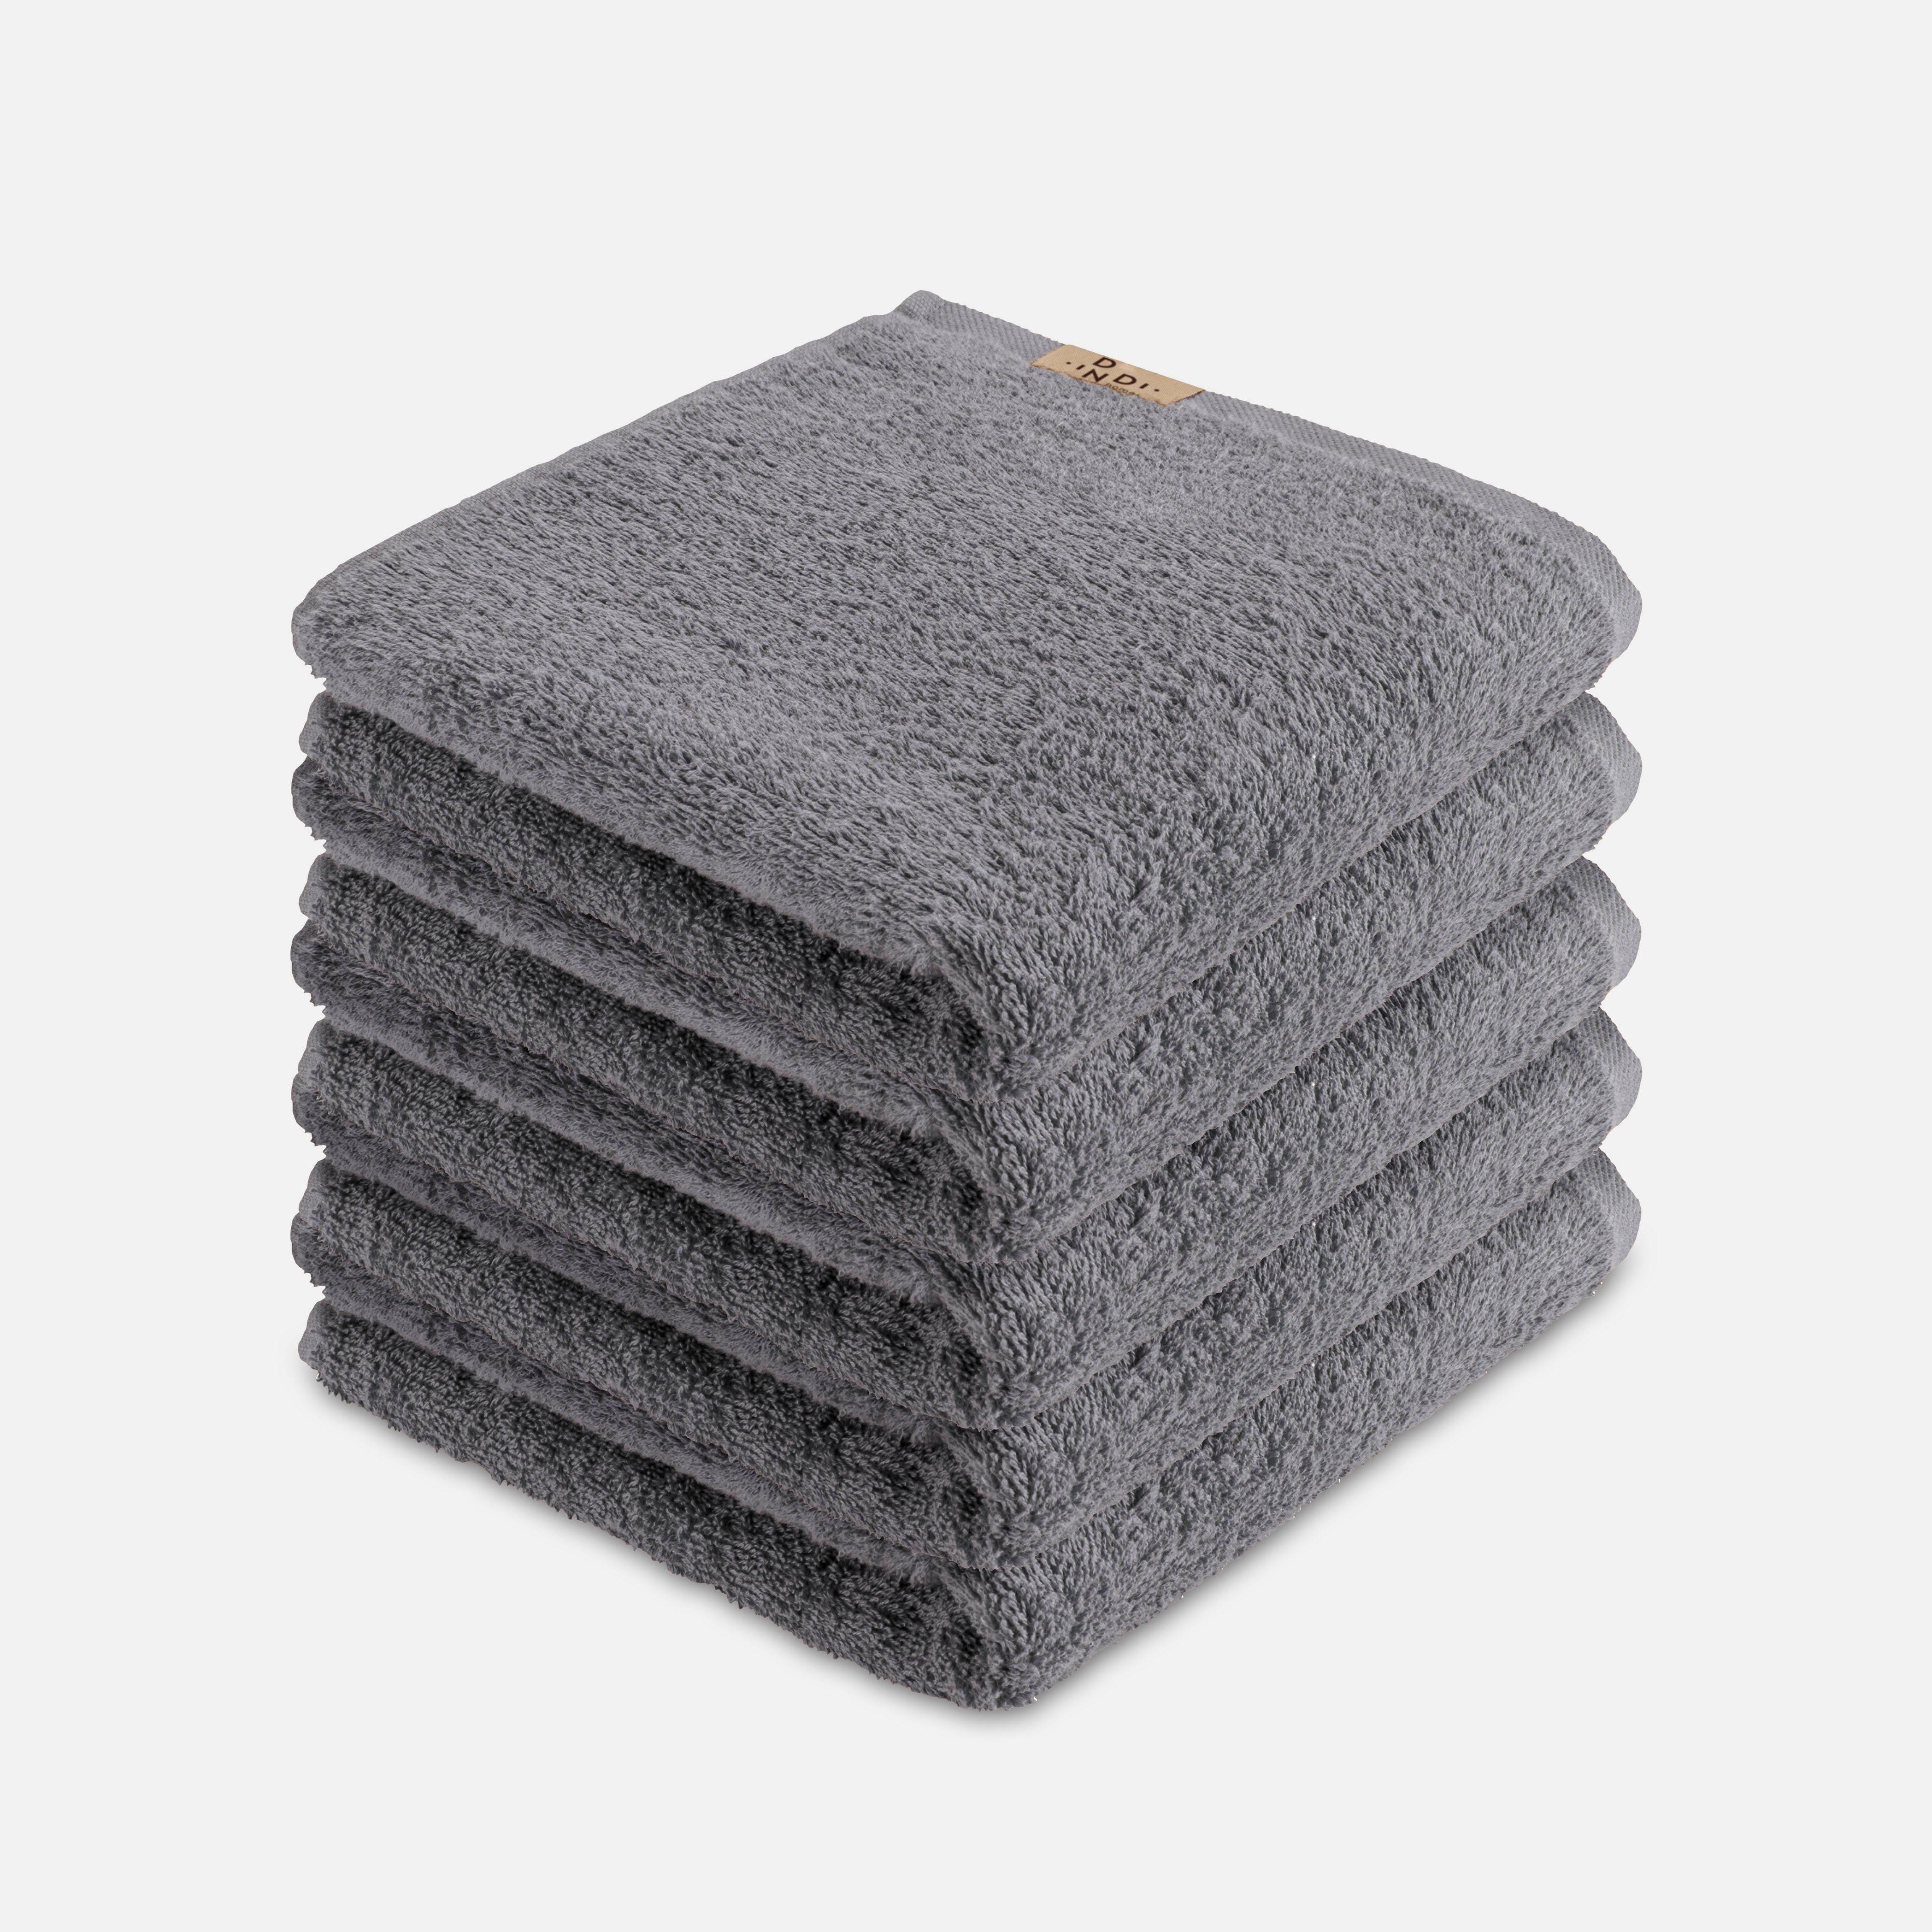 Handdoek Soft Beauty Uni Set van 5 stuks 50x100cm